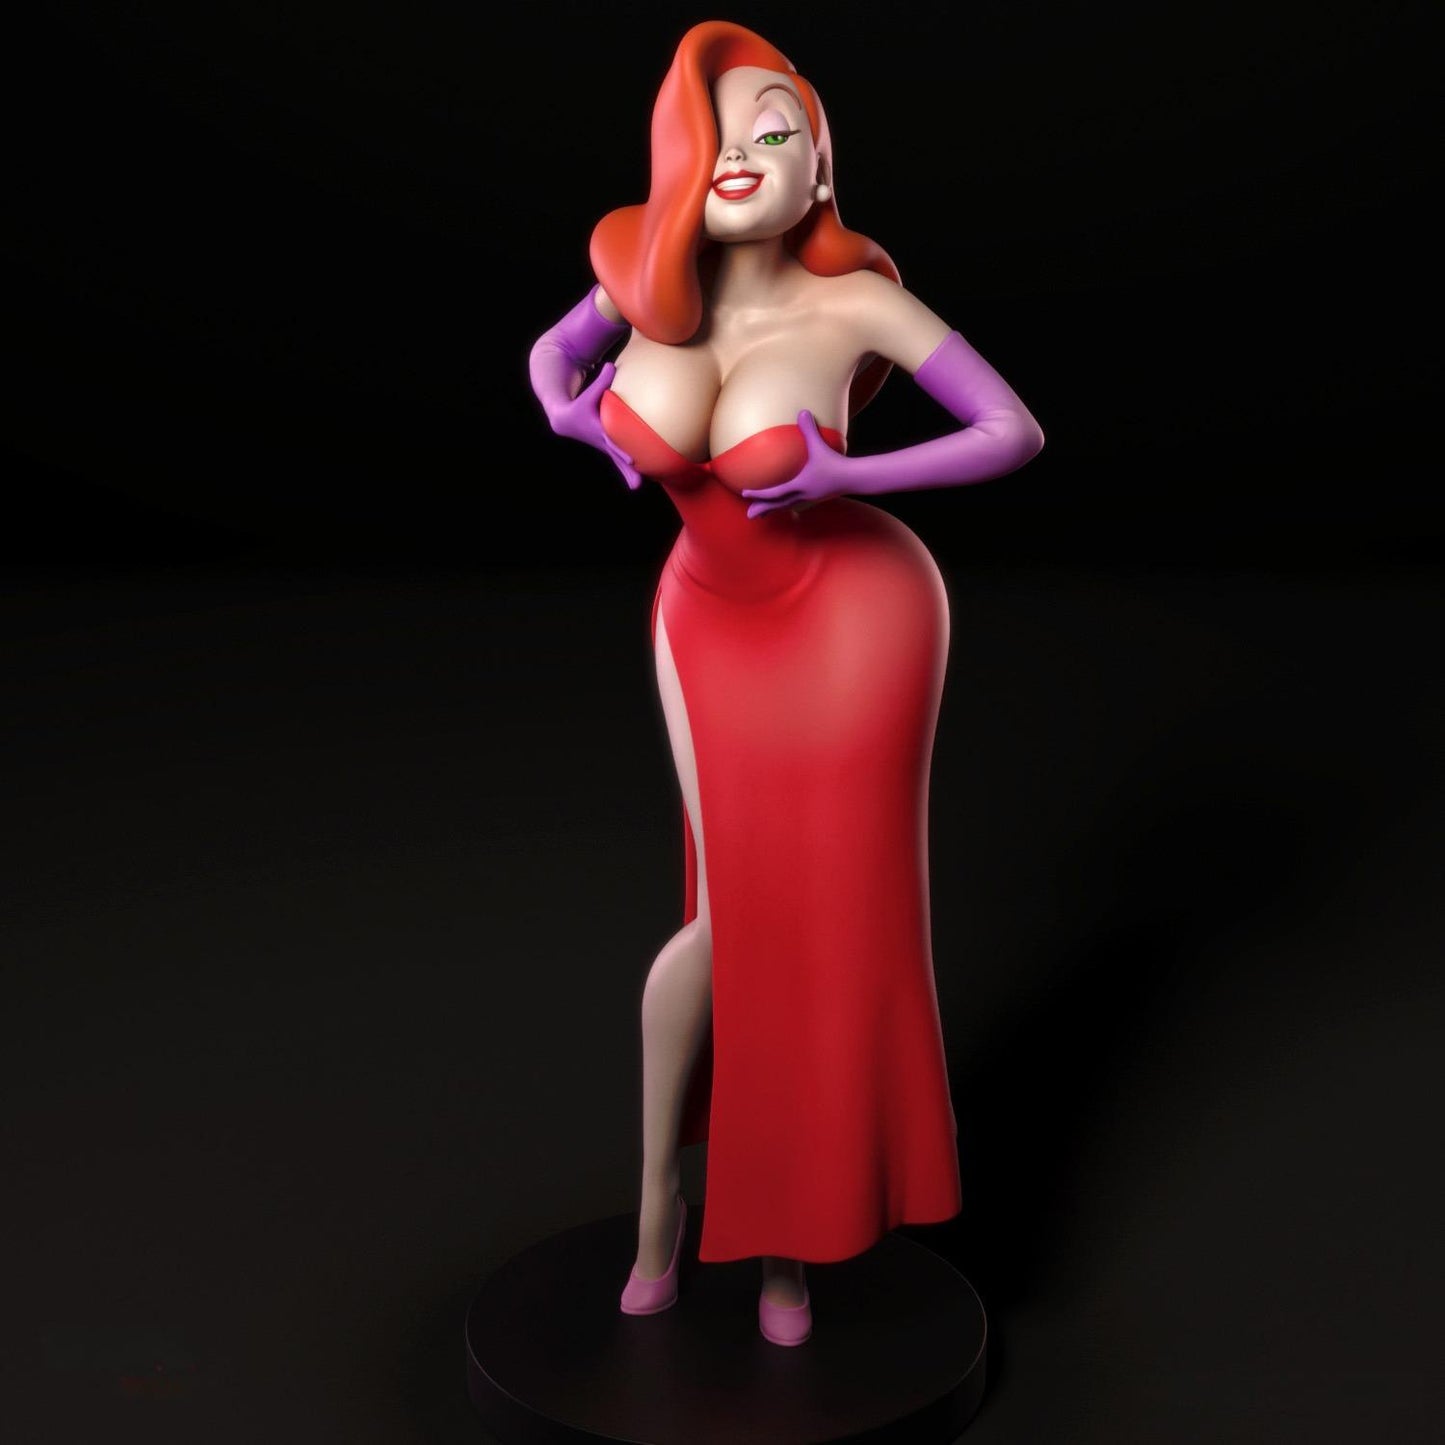 2222 Jessica Rabbit NSFW - STL 3D Print Files